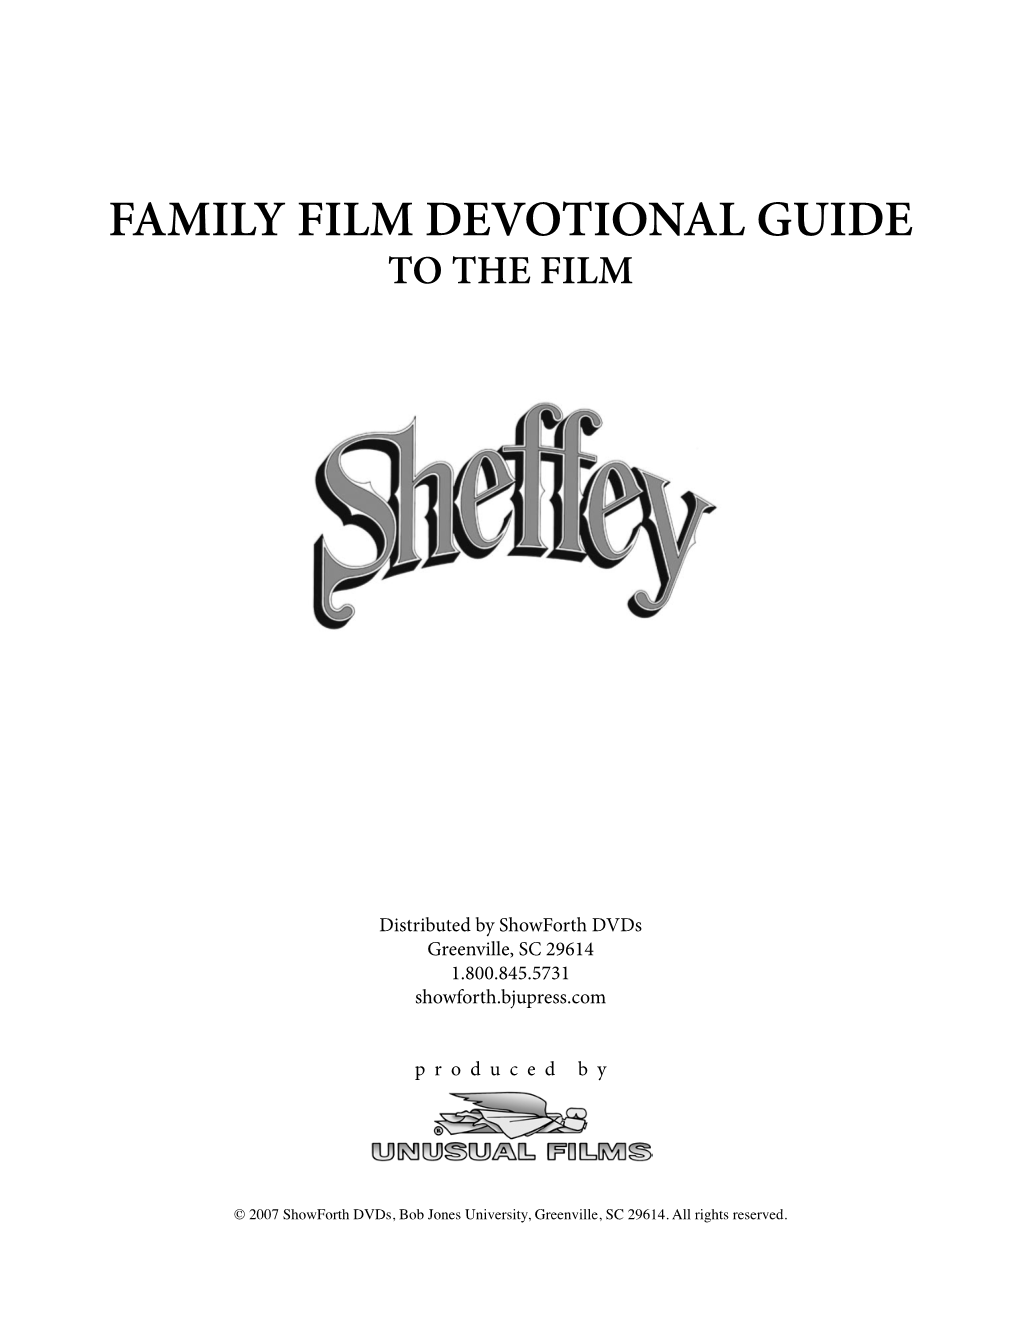 Sheffey Devotional Guide